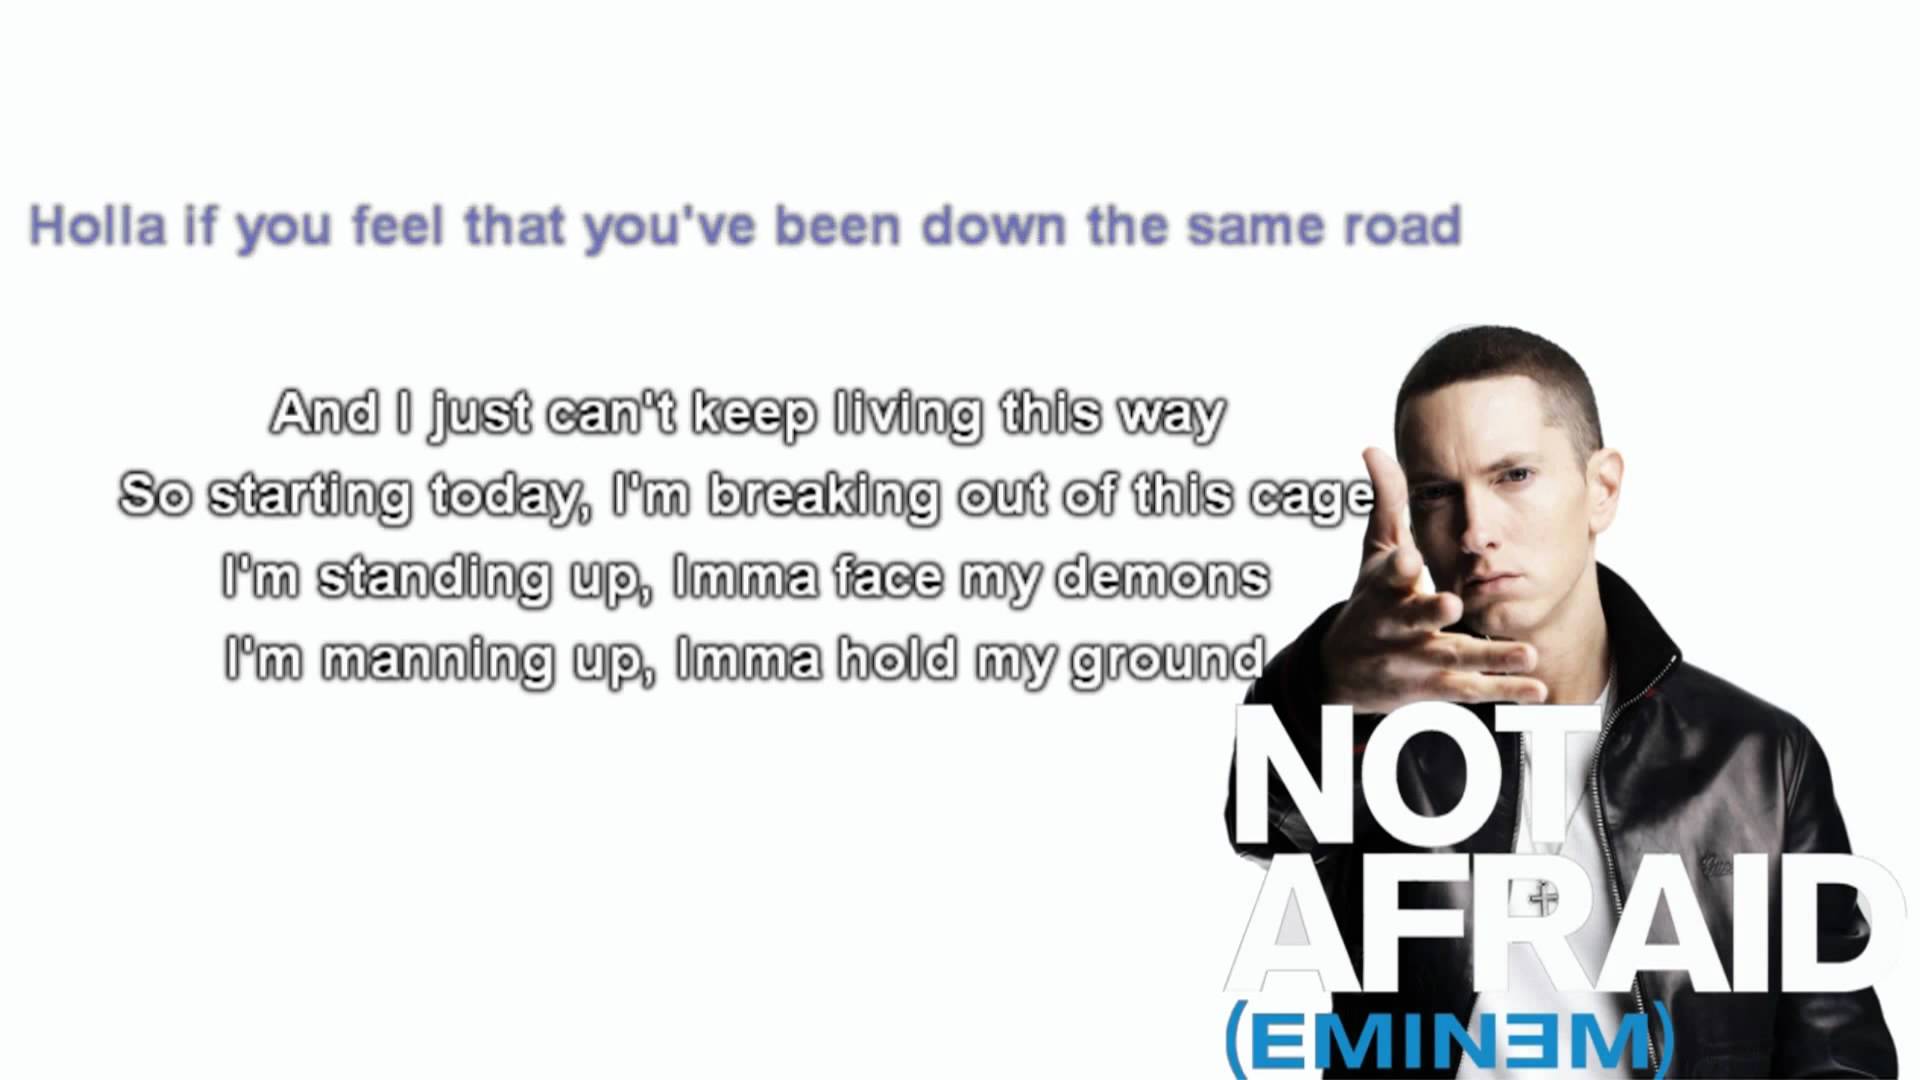 Eminem - Not Afraid Lyrics